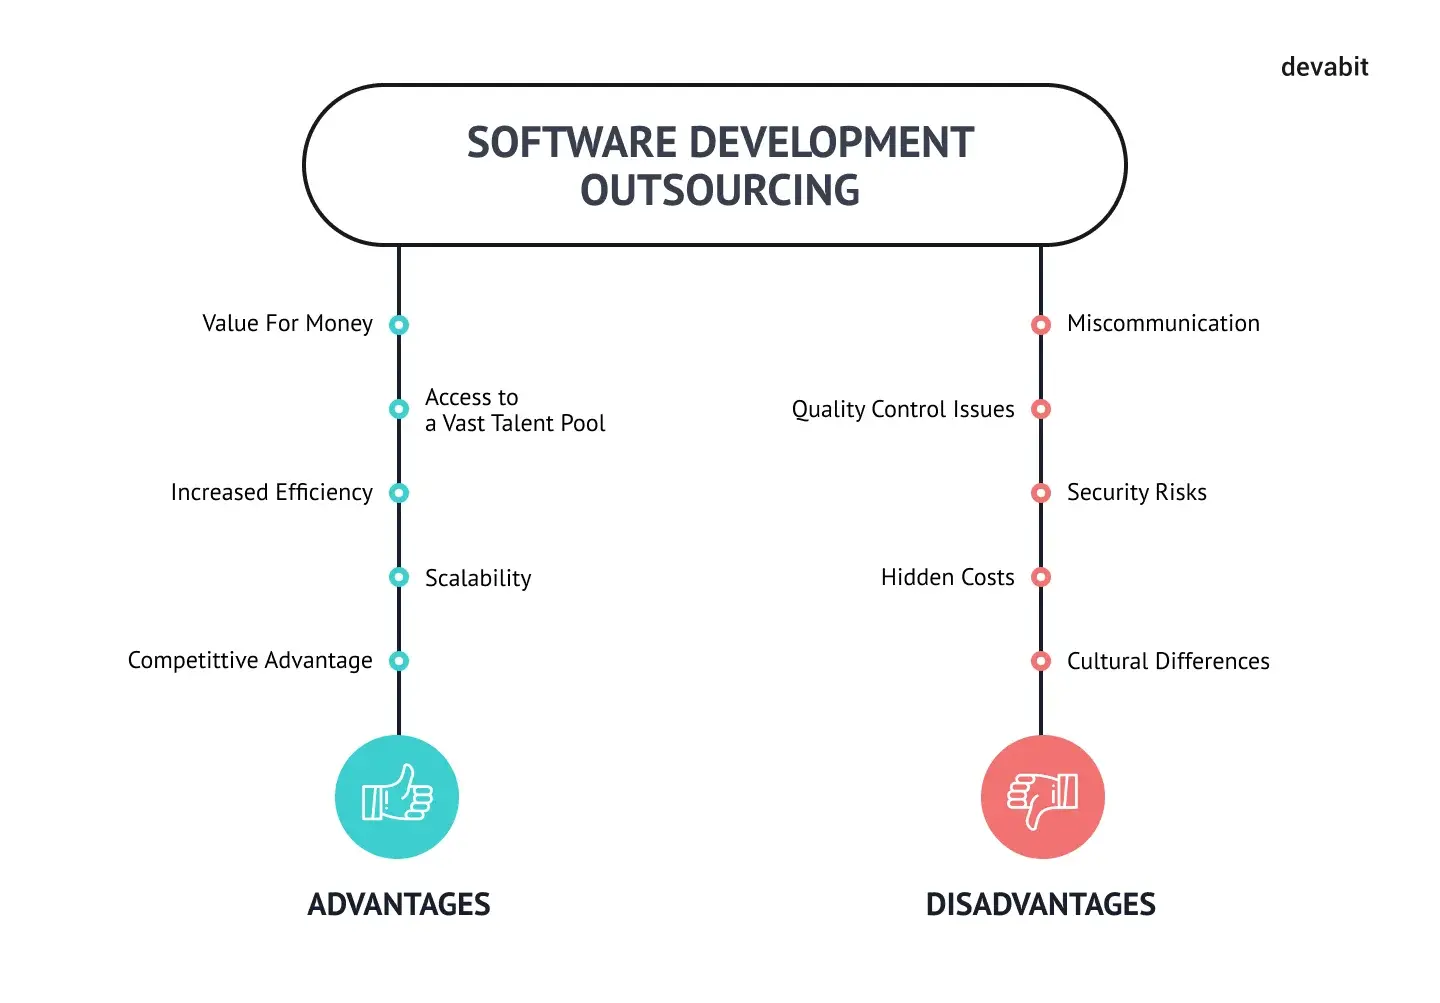 Advantages and Dosadvantages of Software Development Outsourcing by devabit